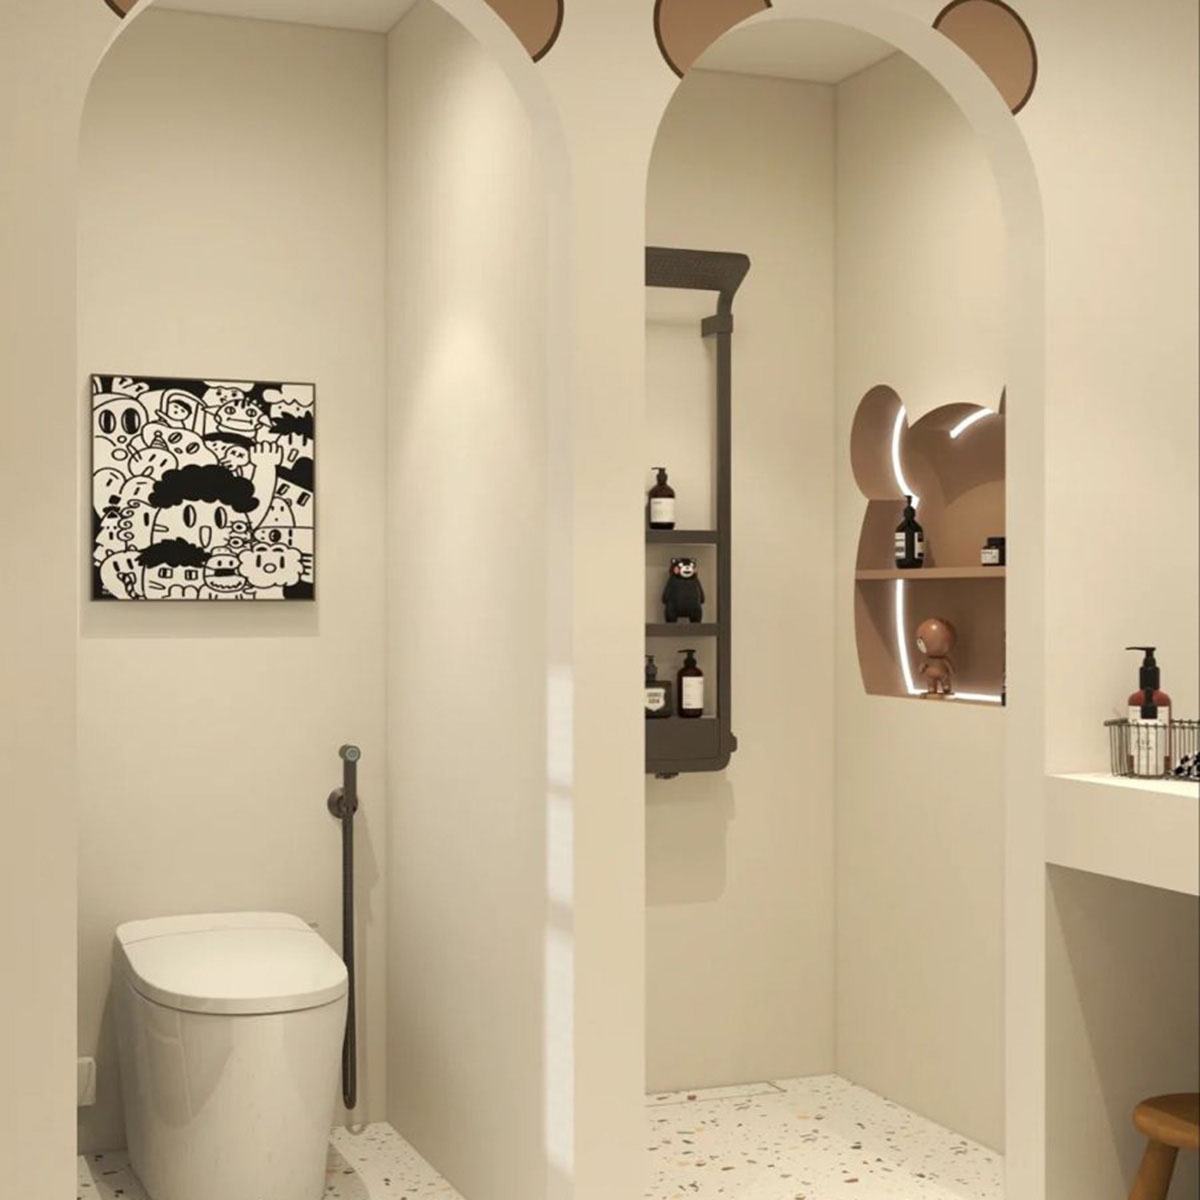 Thiết kế phòng tắm với hệ cửa phân chia phòng. Nguồn: Pinterest